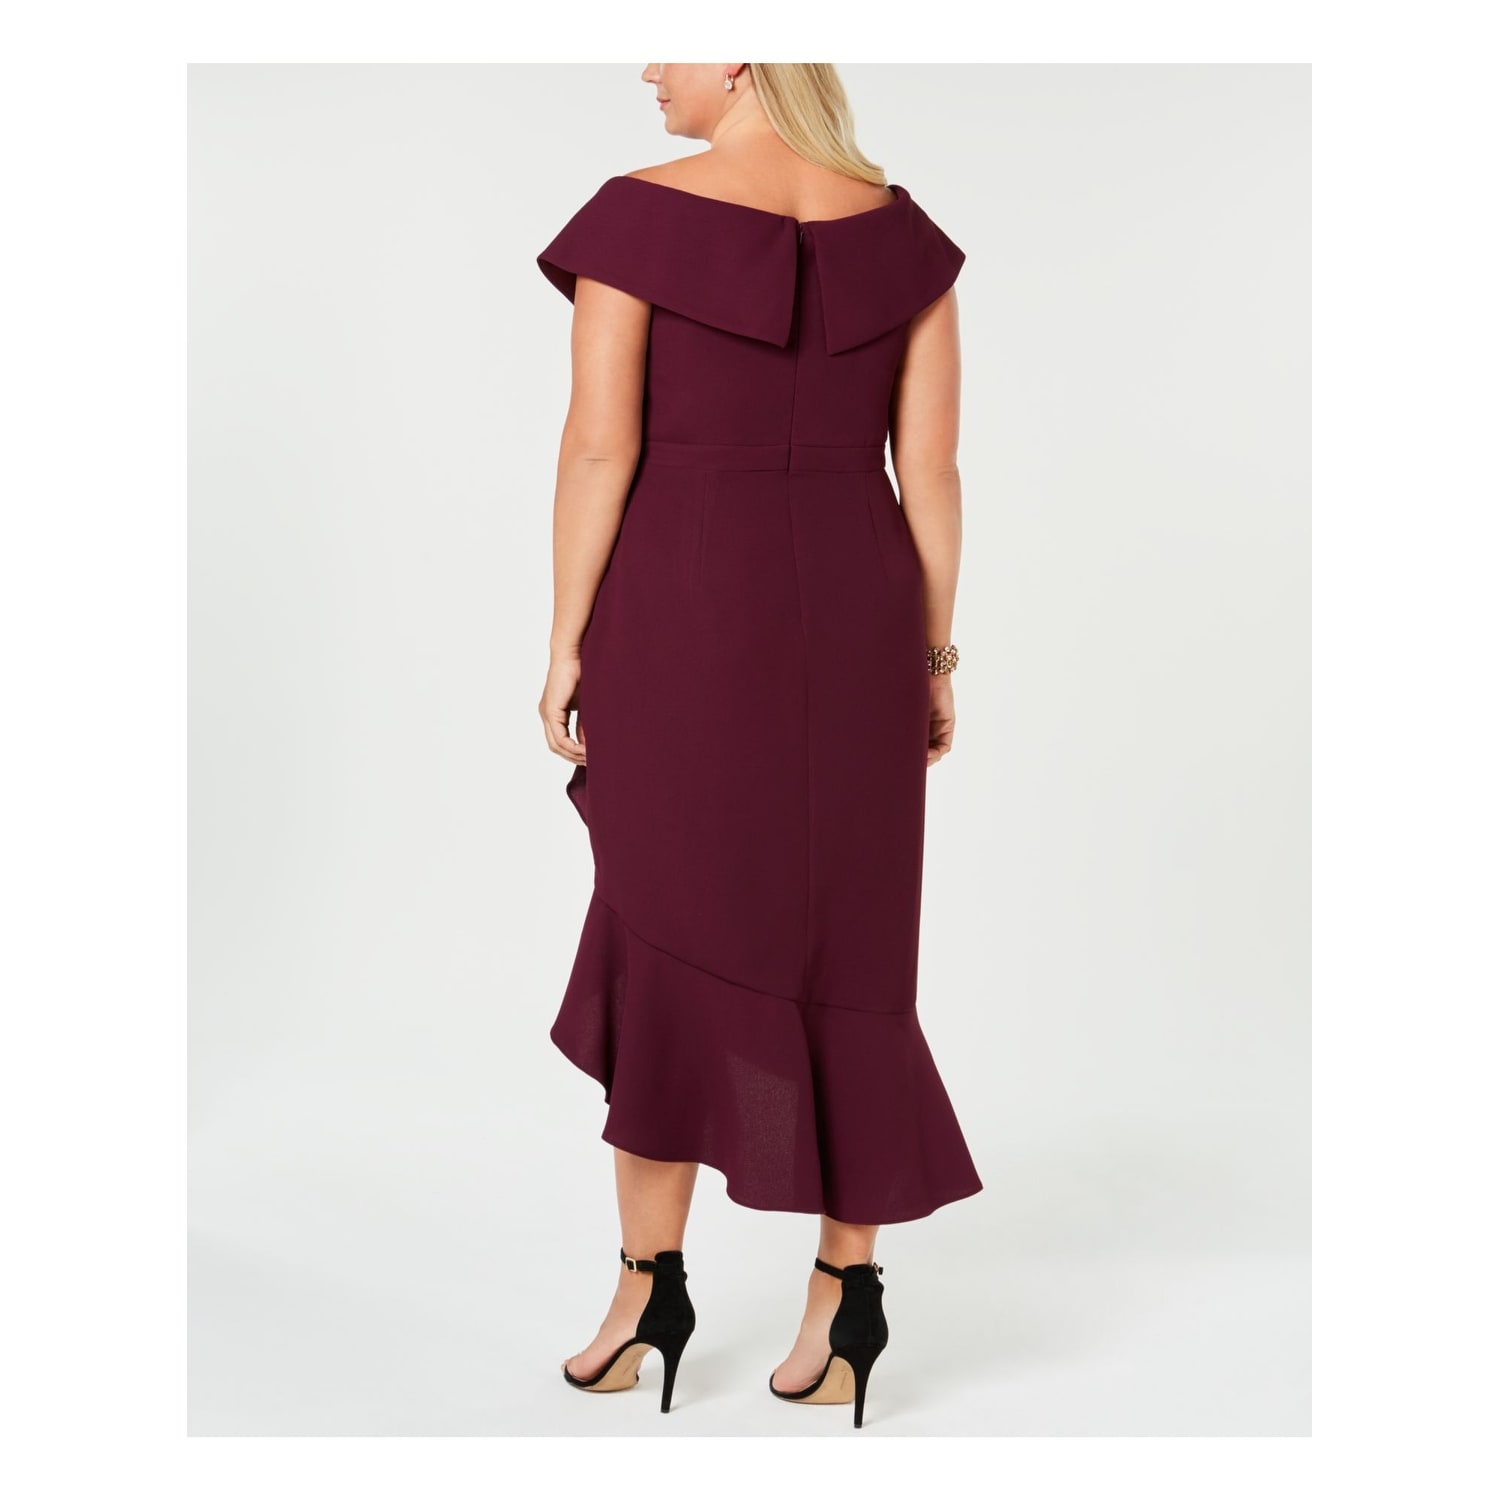 burgundy dress size 22